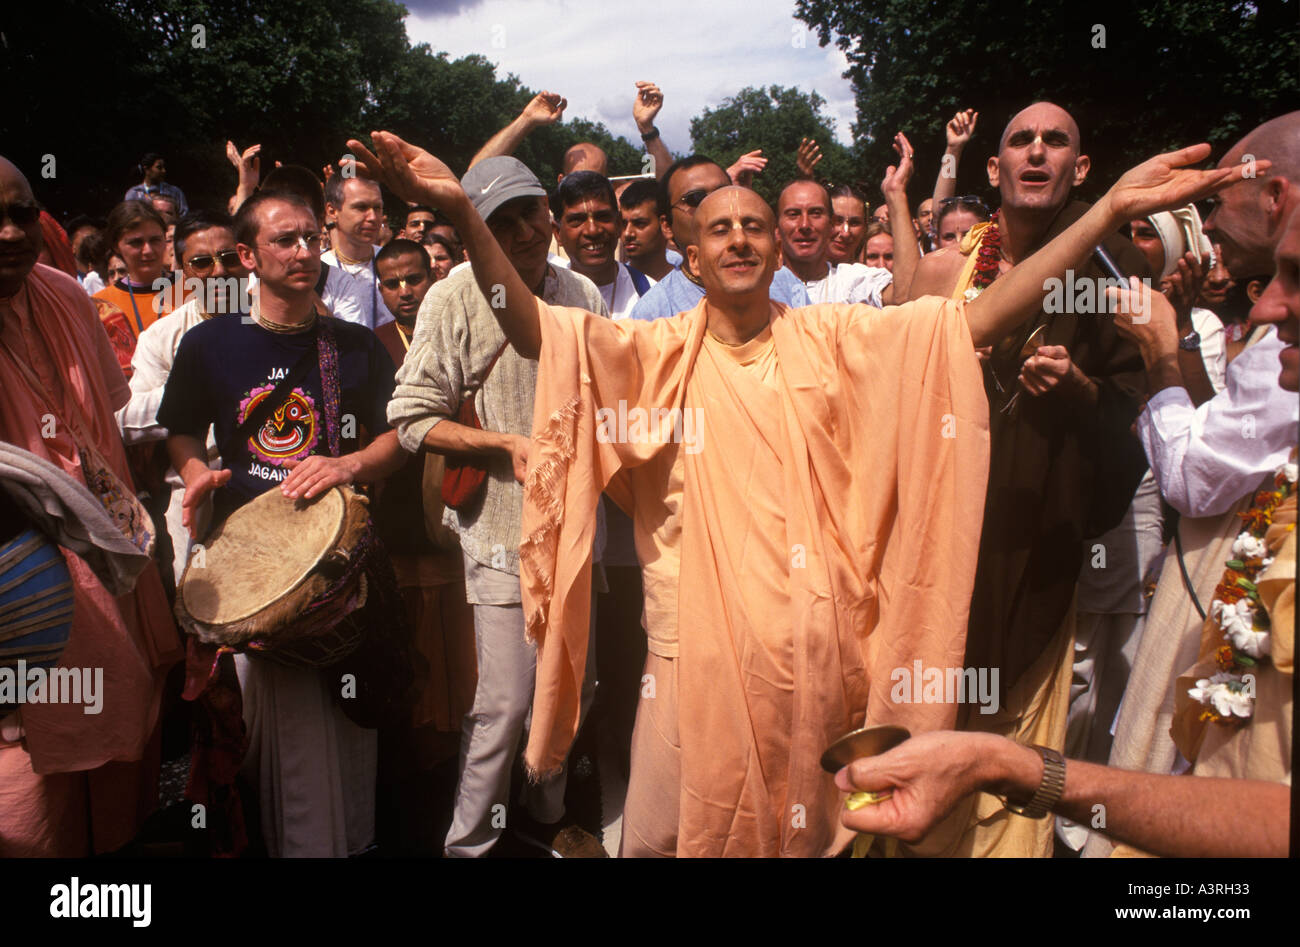 Mouvement Hare Krishna. Hindou Rathayatra ou festival chariot. Danse de dévot célébrer alors qu'ils marchent sur Park Lane Londres années 2004 2000 Royaume-Uni HOMER SYKES Banque D'Images